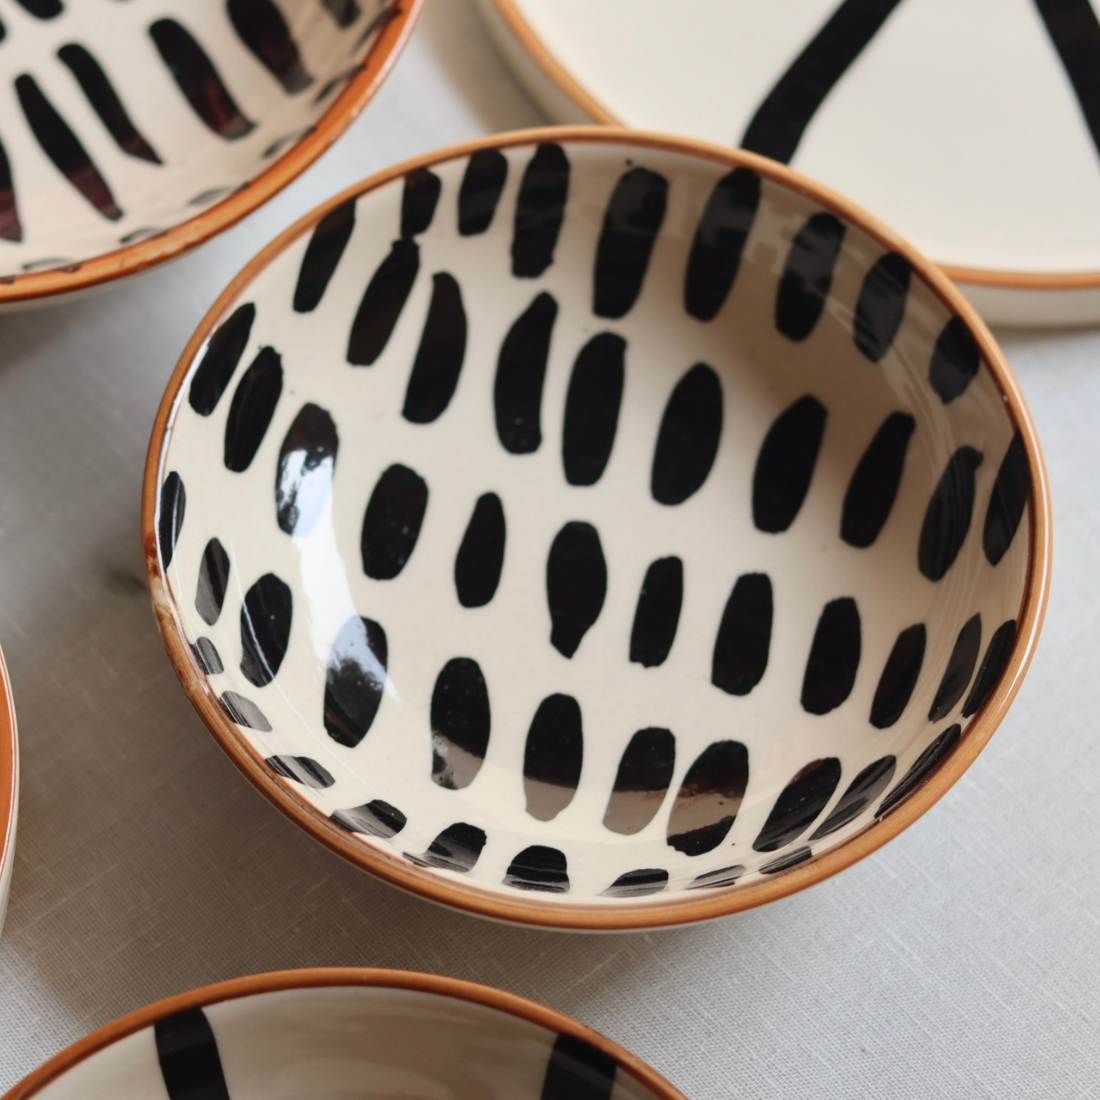 Handmade ceramic smoothie bowls 